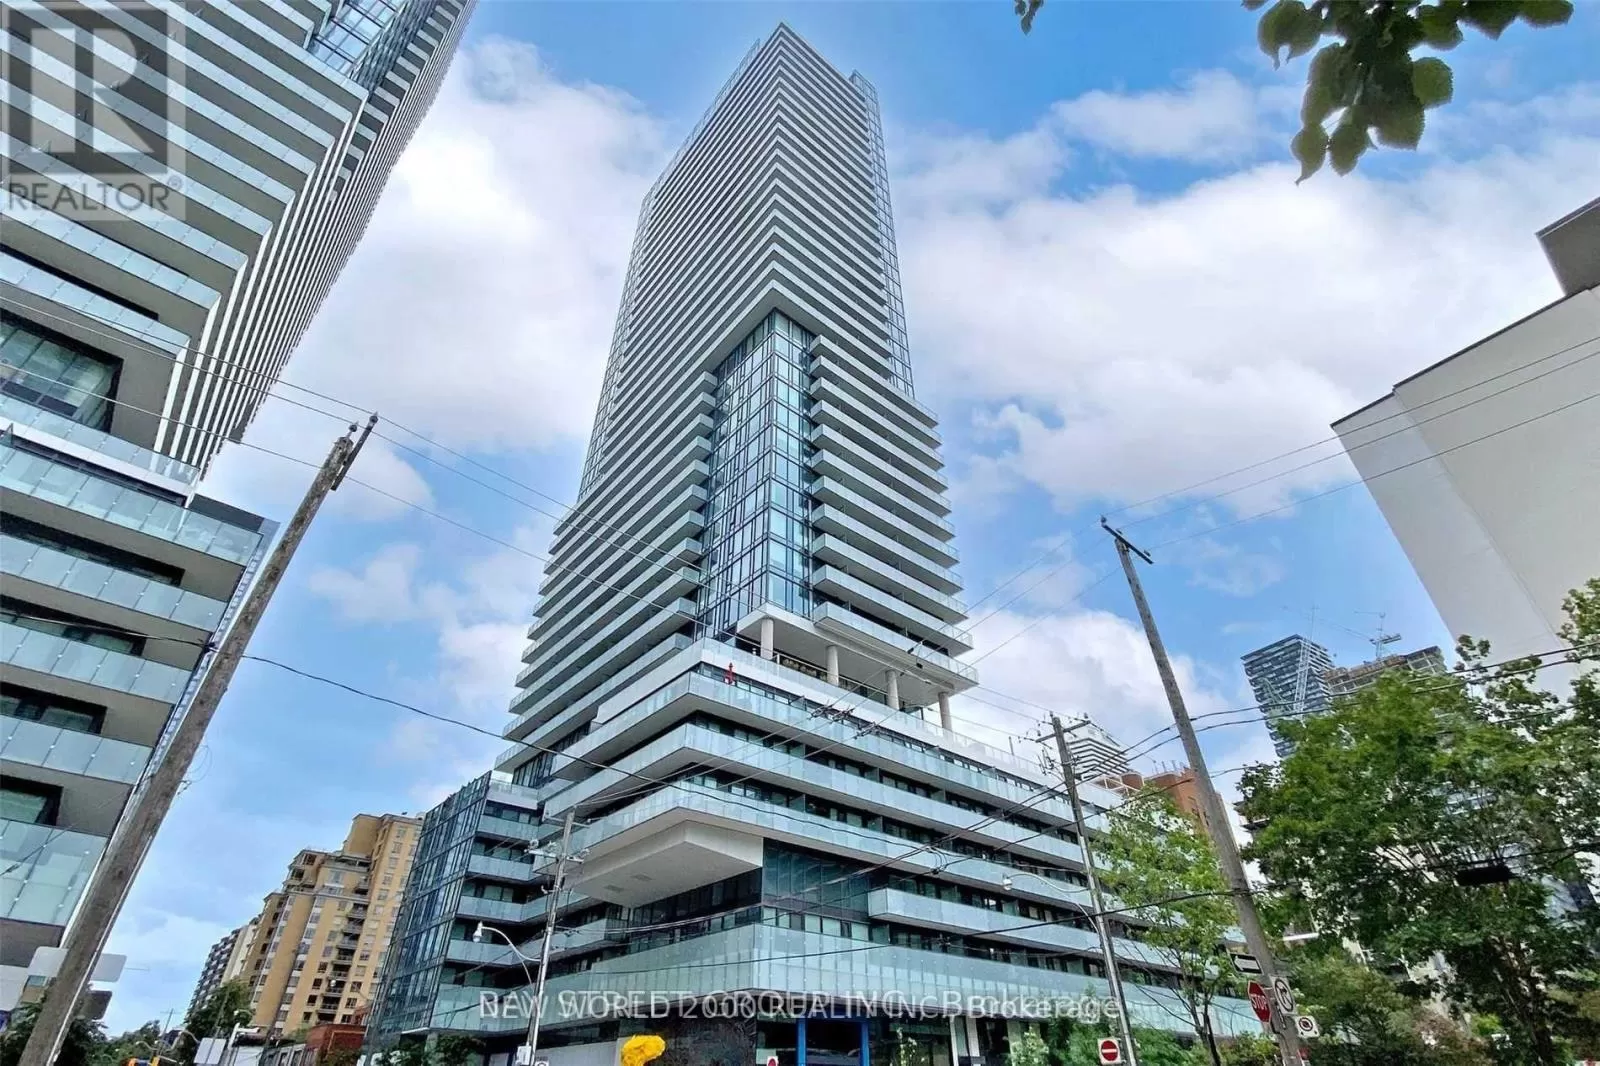 Apartment for rent: 2812 - 161 Roehampton Avenue, Toronto, Ontario M4P 0C8